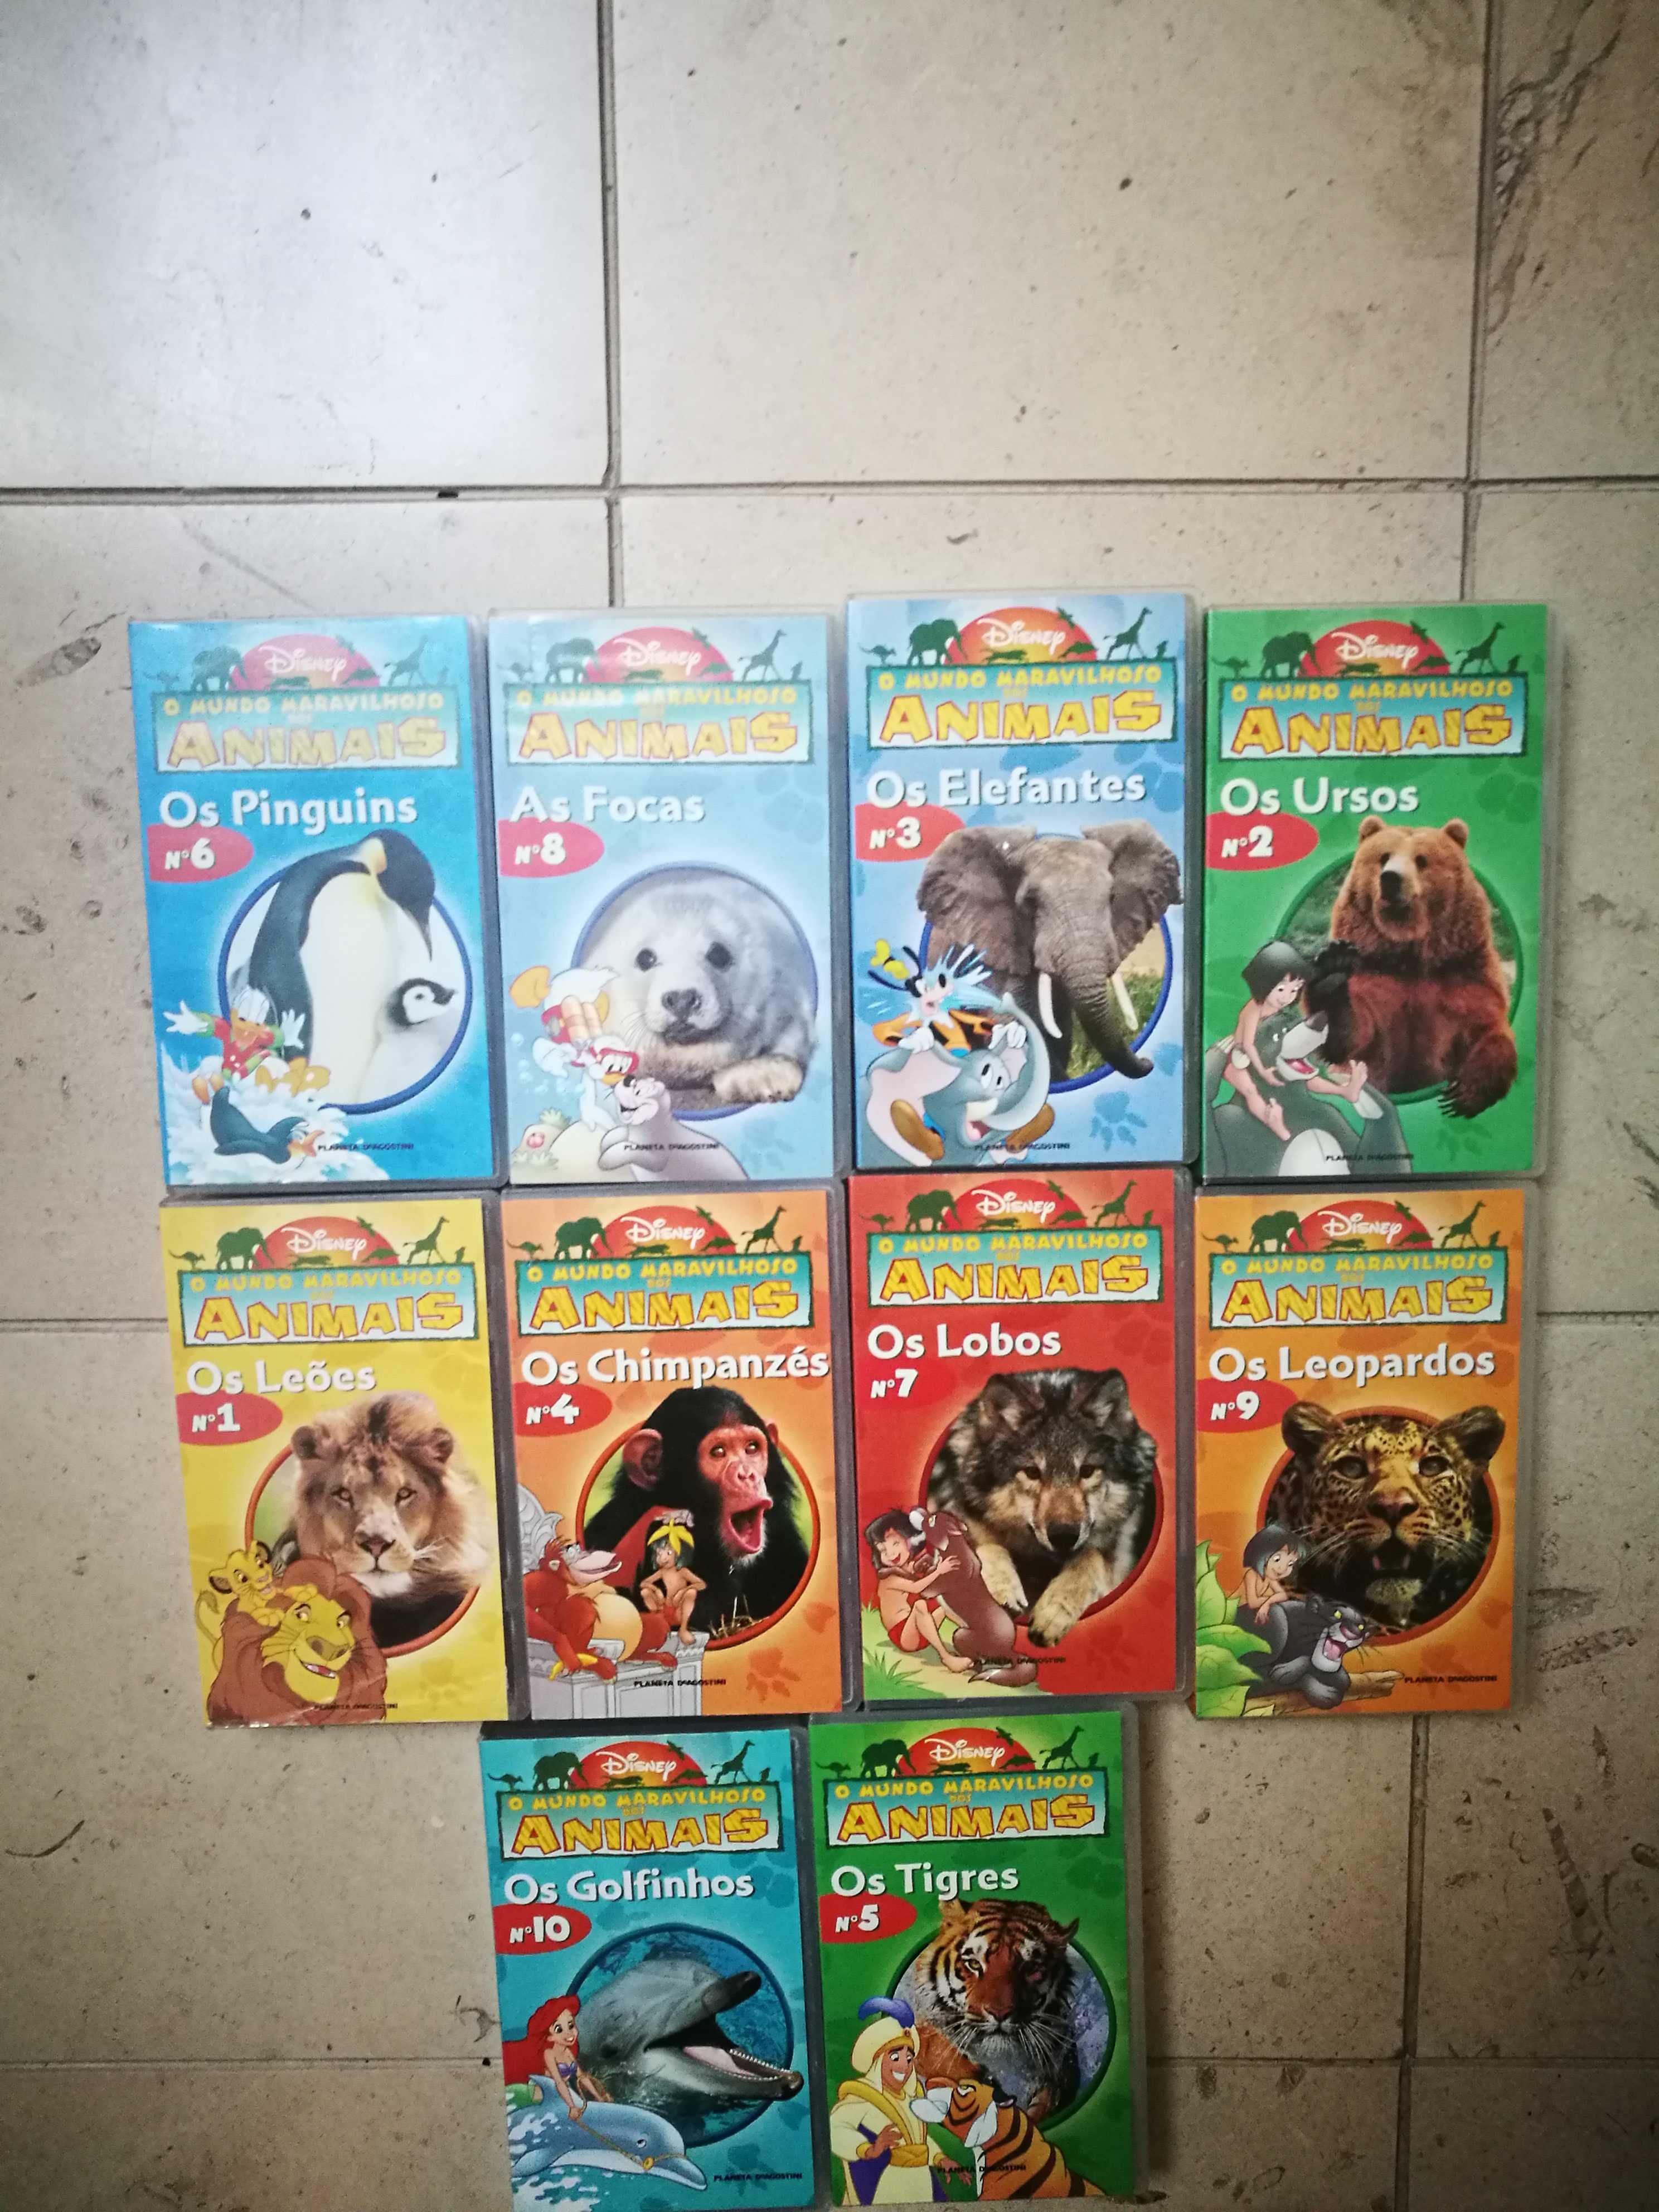 O Mundo Maravilhoso dos Animais (Cassetes VHS)